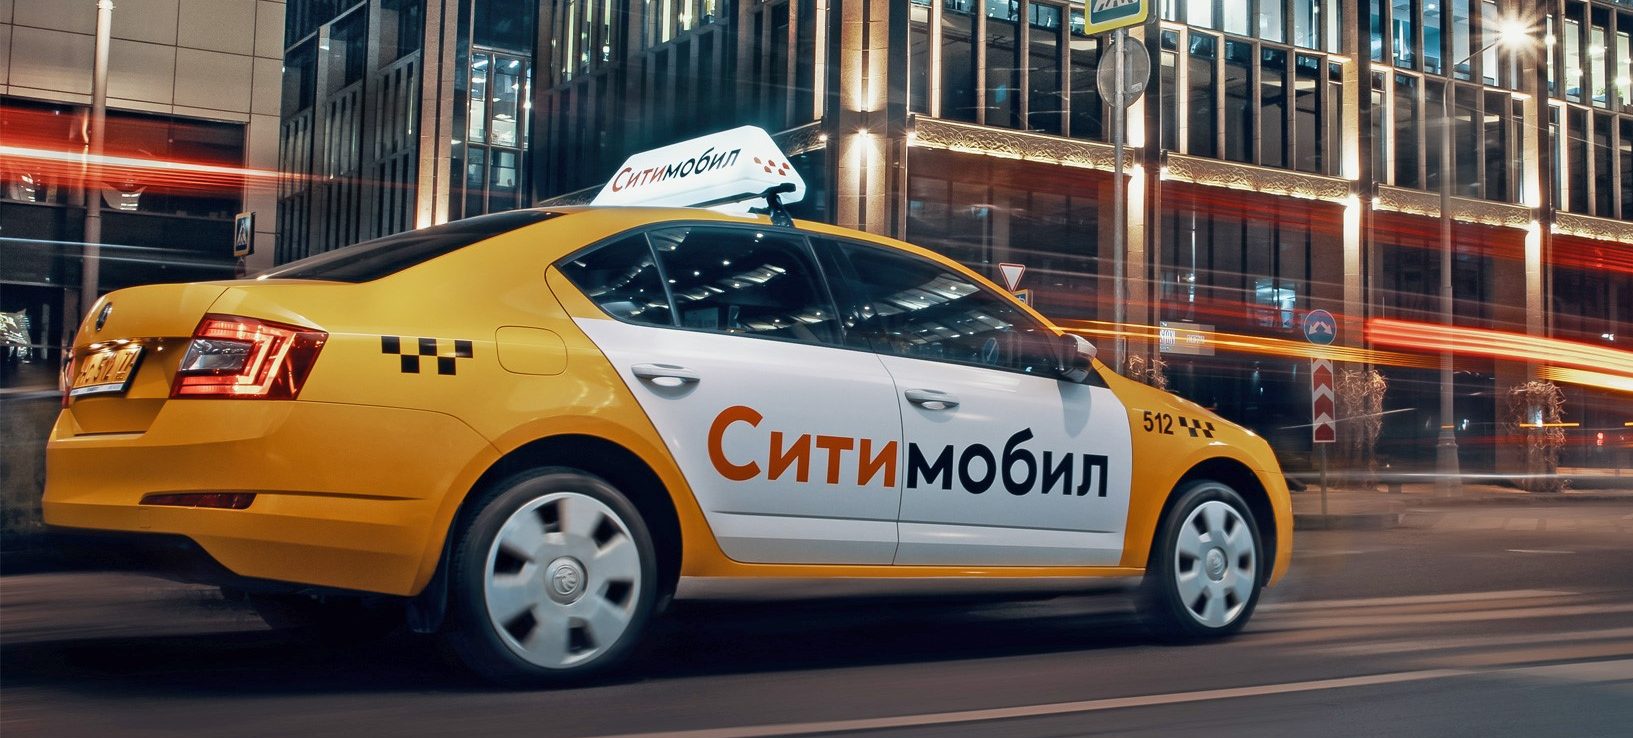 Преимущества работы в такси «Ситимобил» на собственном и арендном автомобиле